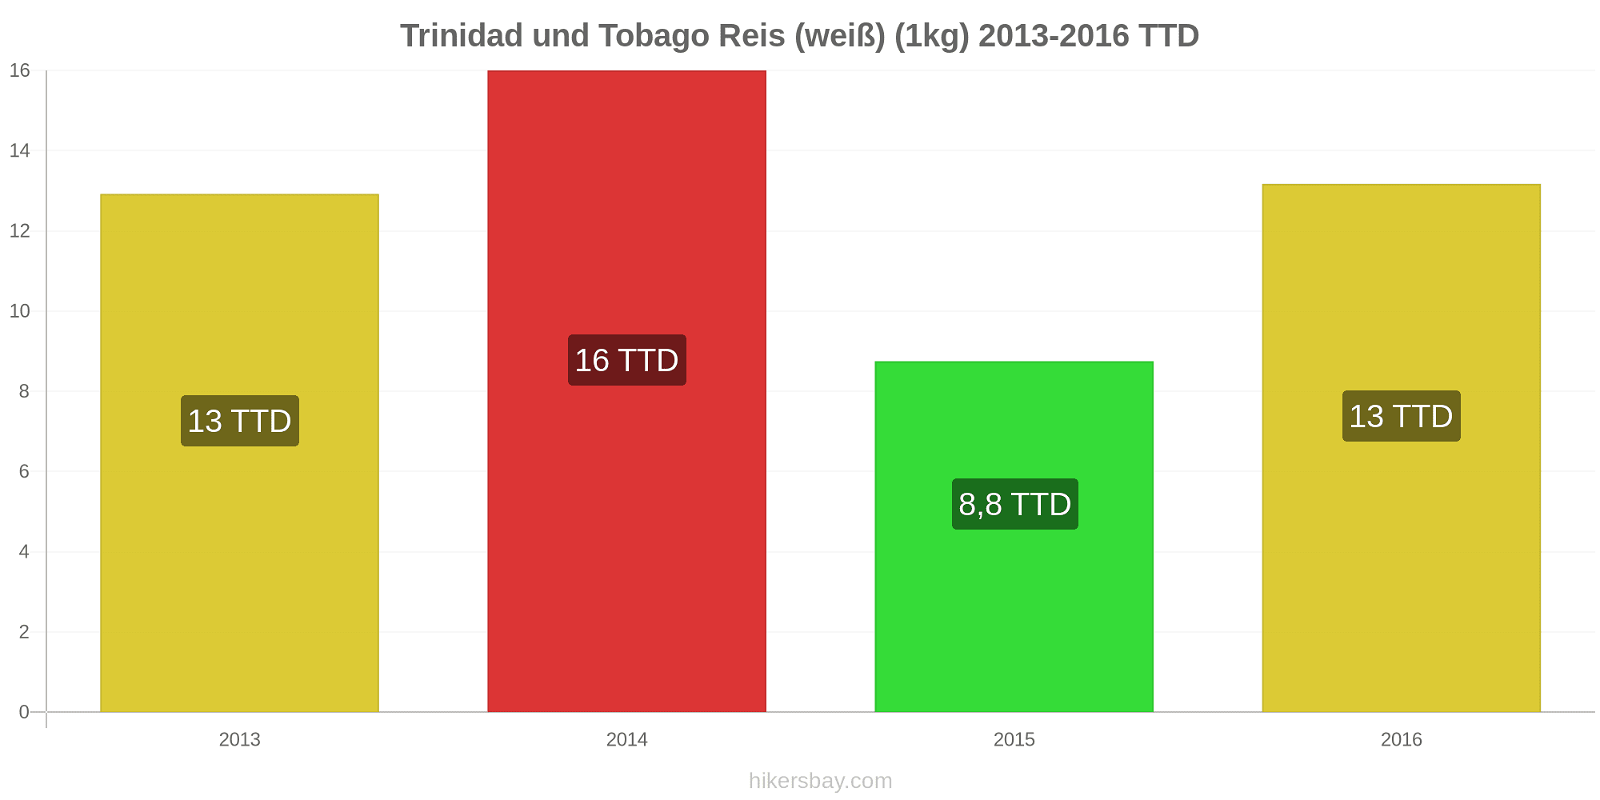 Trinidad und Tobago Preisänderungen Reis (weiß) (1kg) hikersbay.com